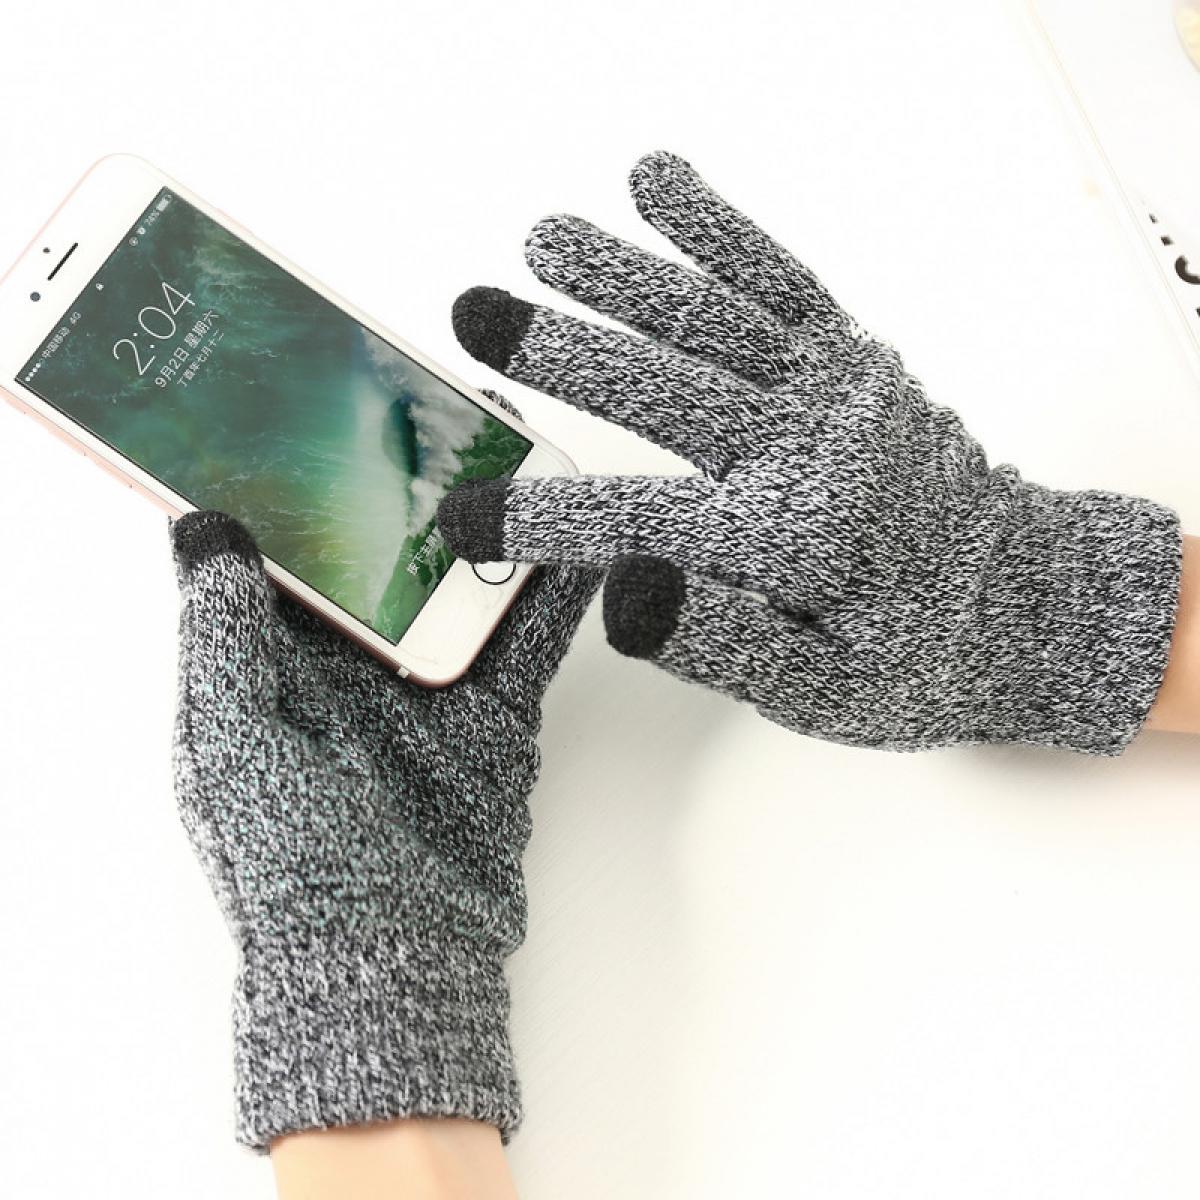 Shot - Gants Homme tactiles pour SAMSUNG Galaxy Core Prime Smartphone Taille M 3 doigts Hiver (NOIR) - Autres accessoires smartphone